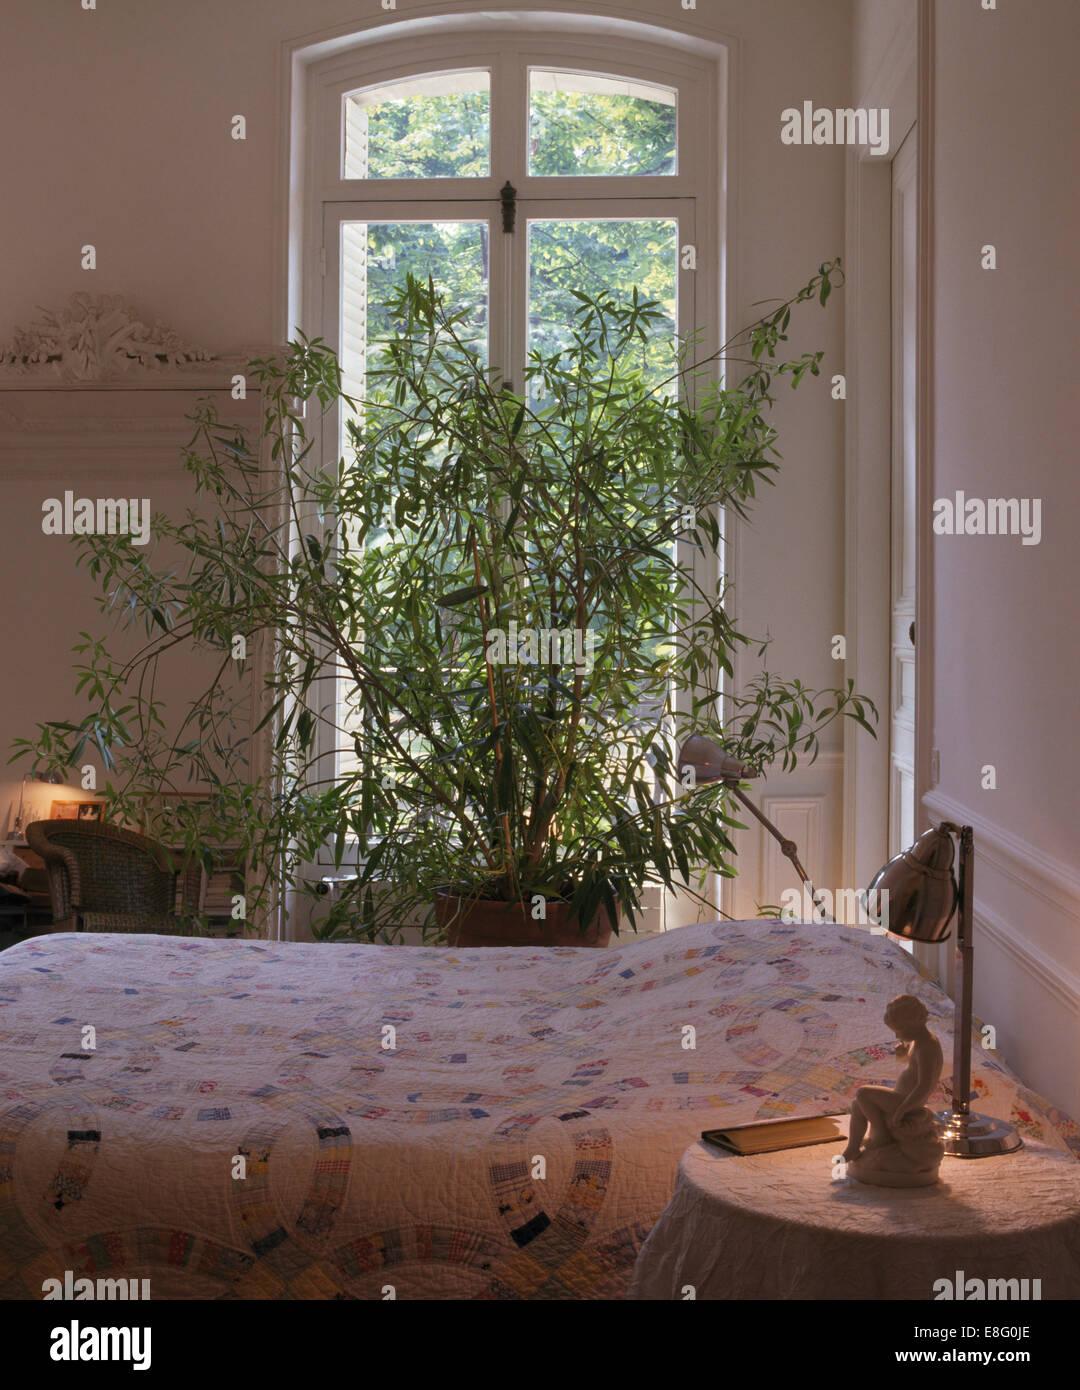 Tall pianta verde nella parte anteriore della finestra nella luminosa e ariosa e camera da letto con la lampada accesa sul piccolo comodino Foto Stock